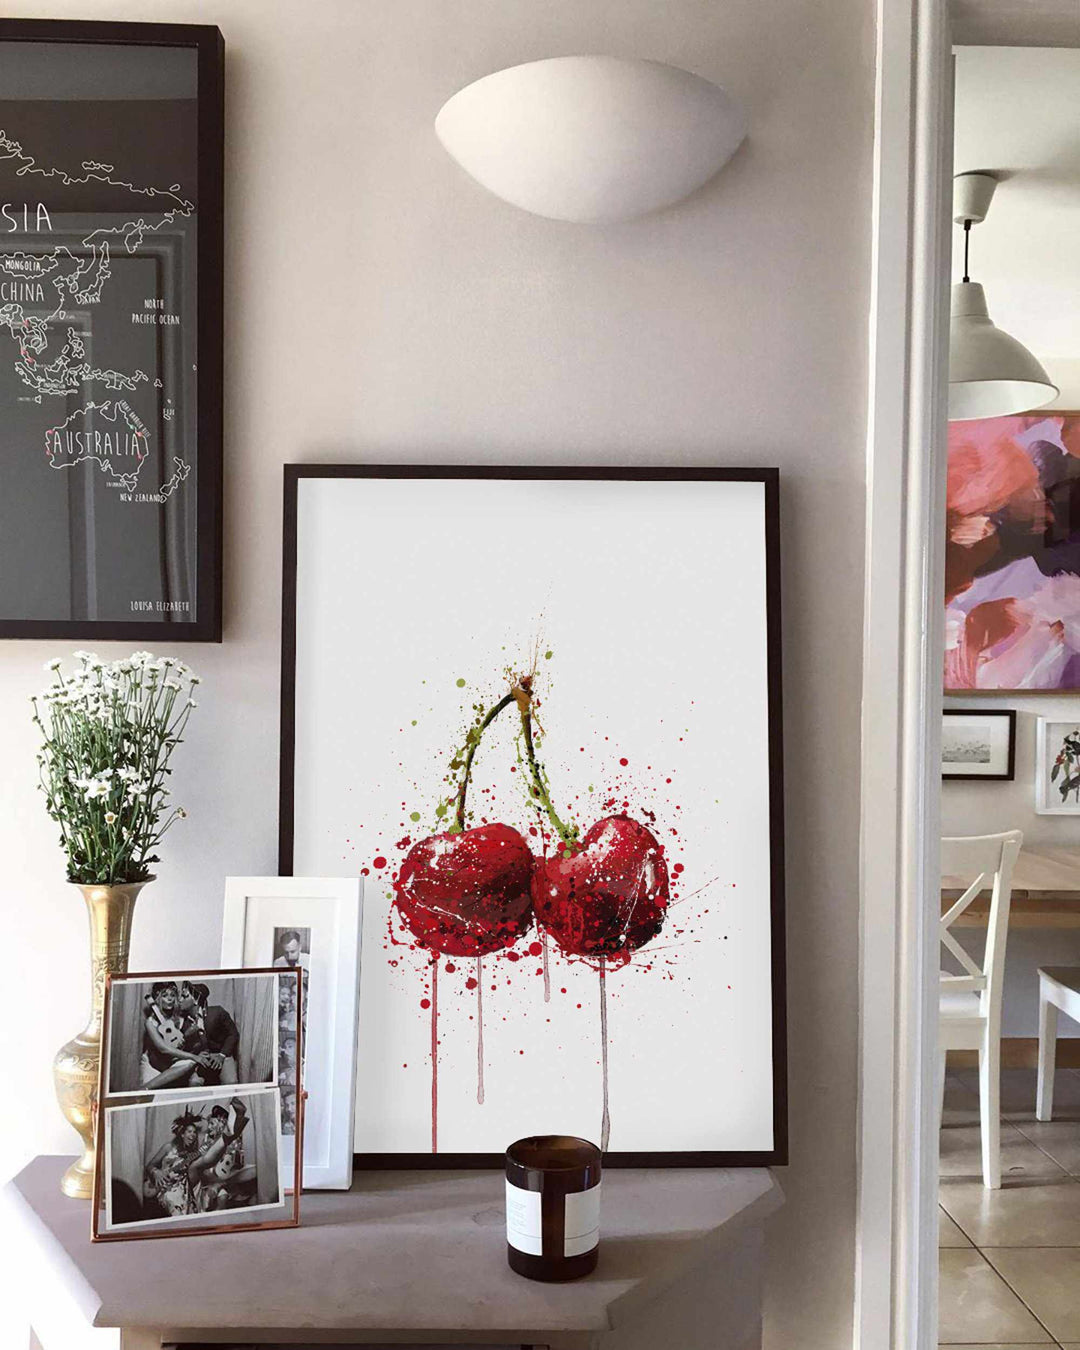 Kirschfrucht-Wand-Kunstdruck